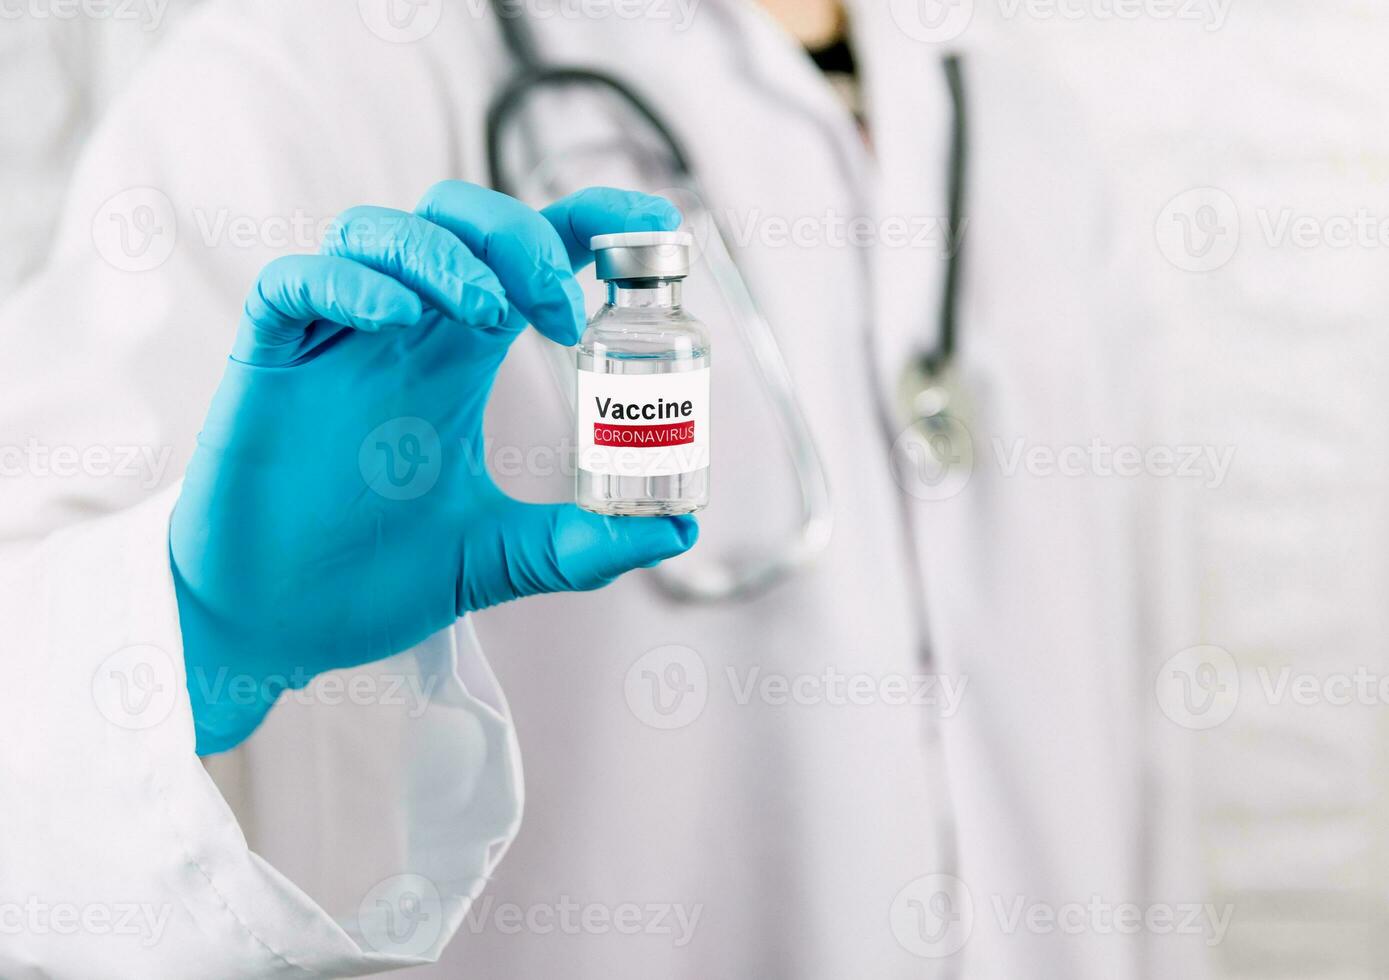 dokter Holding vaccin fles coronavirus en medisch in de ziekenhuis foto